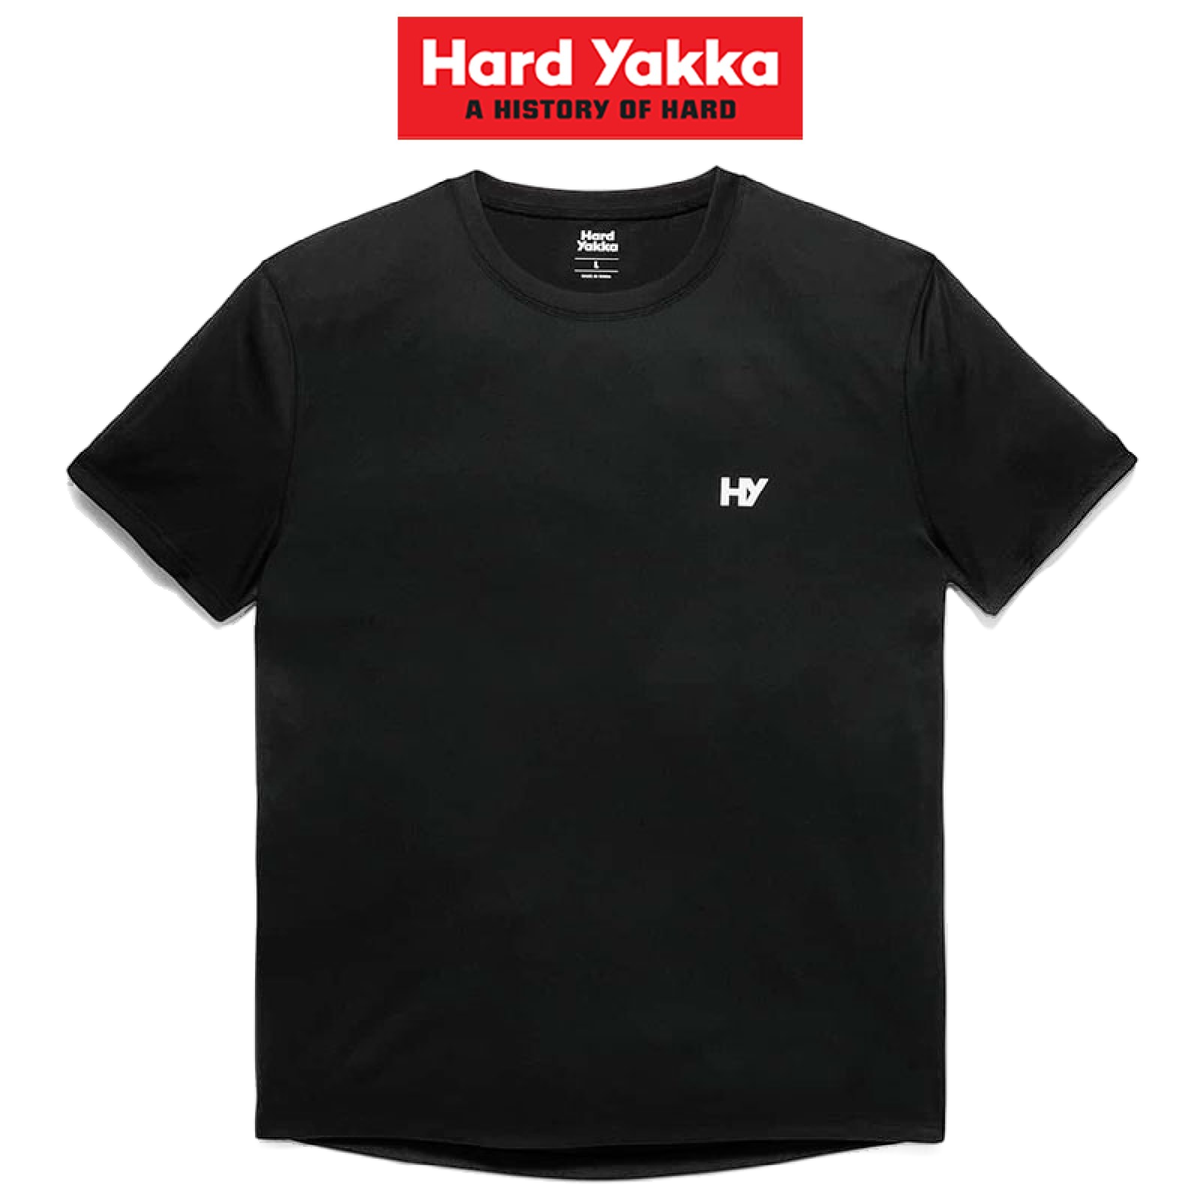 Hard Yakka 3056 Zero Tee Durable Lightweight Comfortable Tee Shirts Y11846